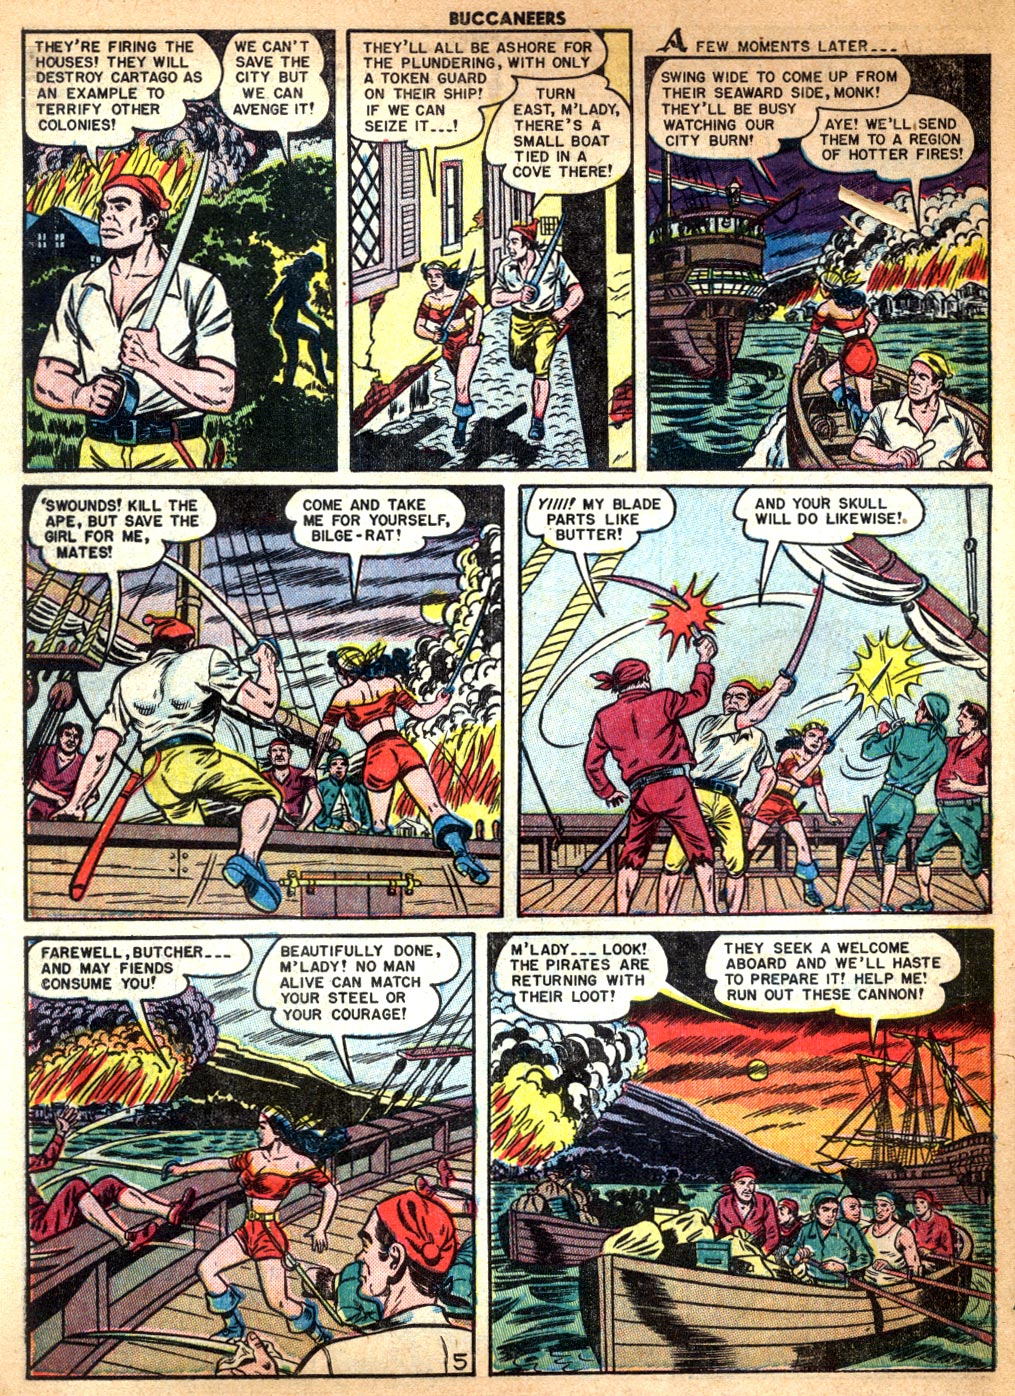 Read online Buccaneers comic -  Issue #25 - 48